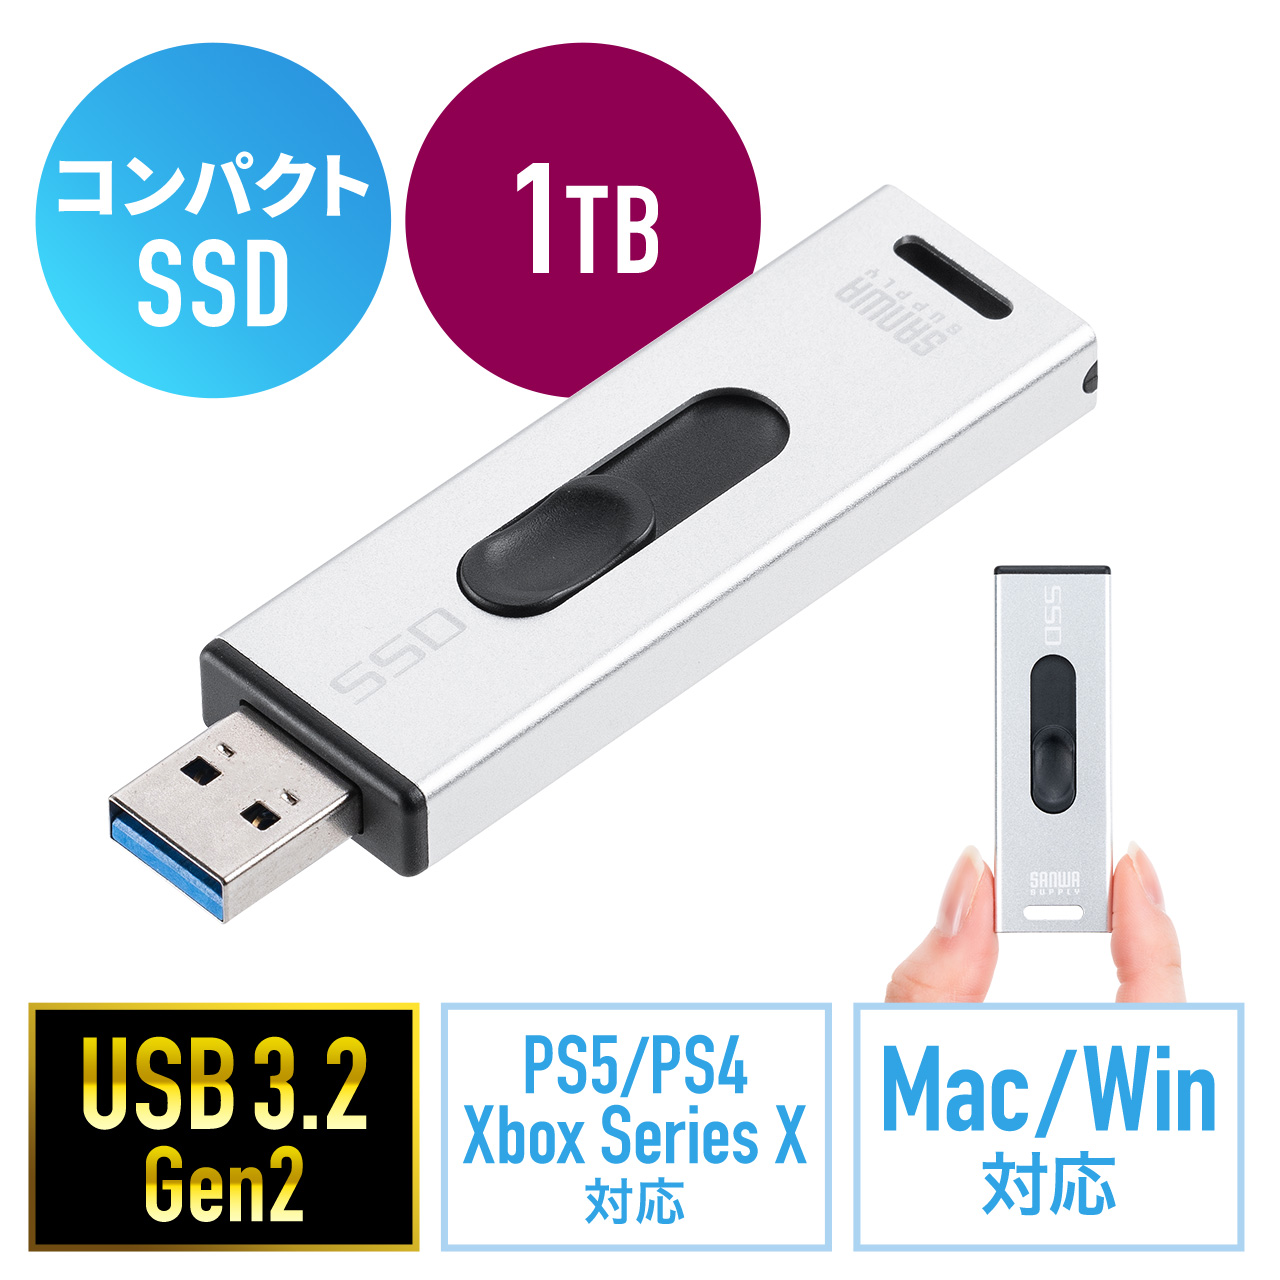 スティック型SSD 外付け USB3.2 Gen2 小型 1TB テレビ録画 ゲーム機 PS5/PS4/Xbox Series X スライド式 直挿し  シルバー 600-USSD1TBS